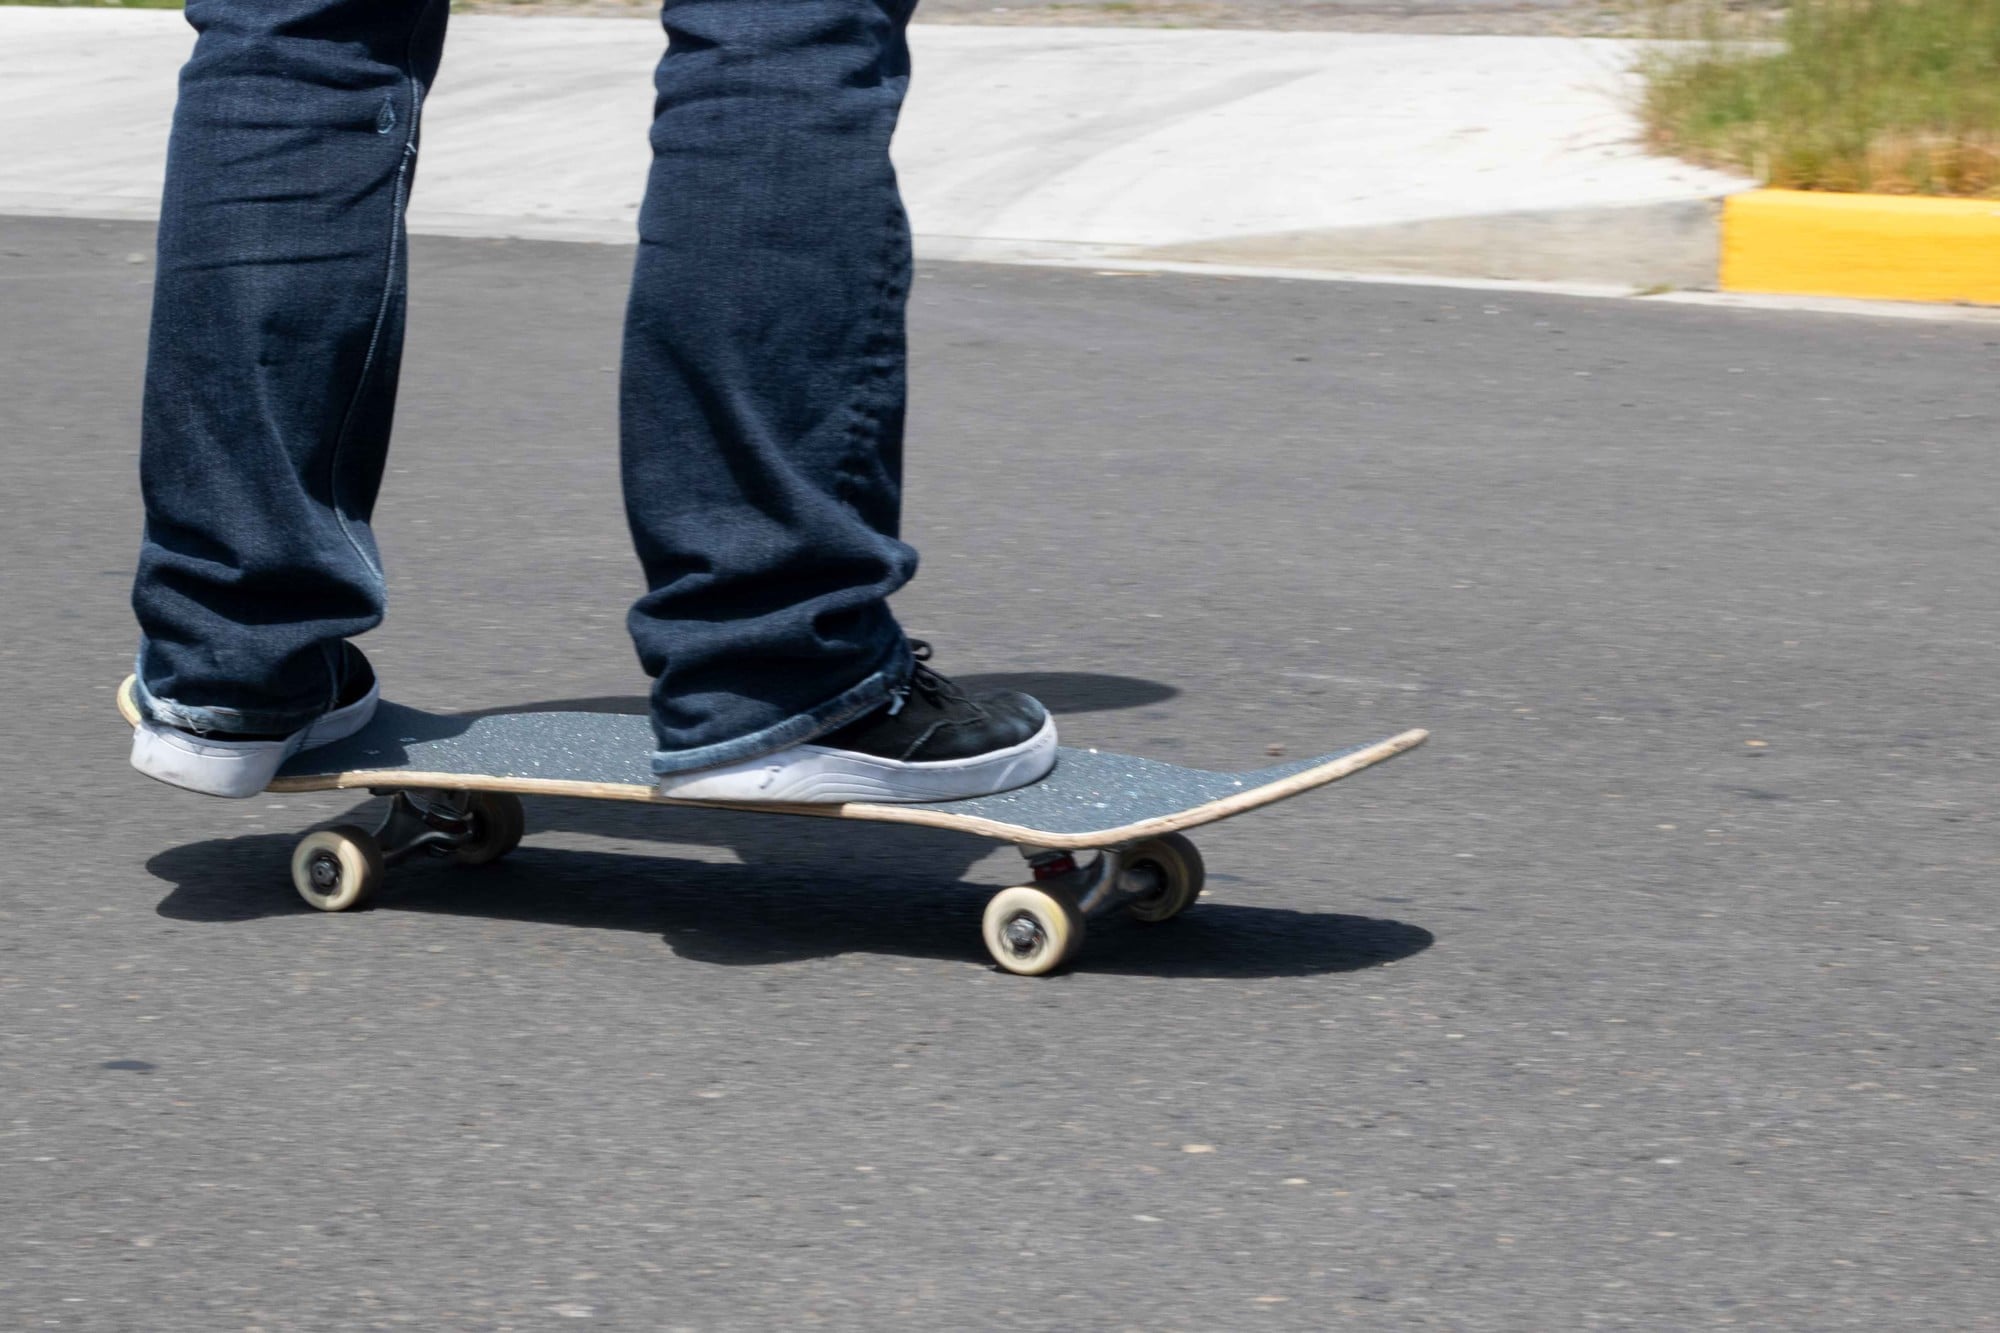 Vriendin Sociale wetenschappen Vermenigvuldiging The Four Skateboard Stances Explained | Tactics